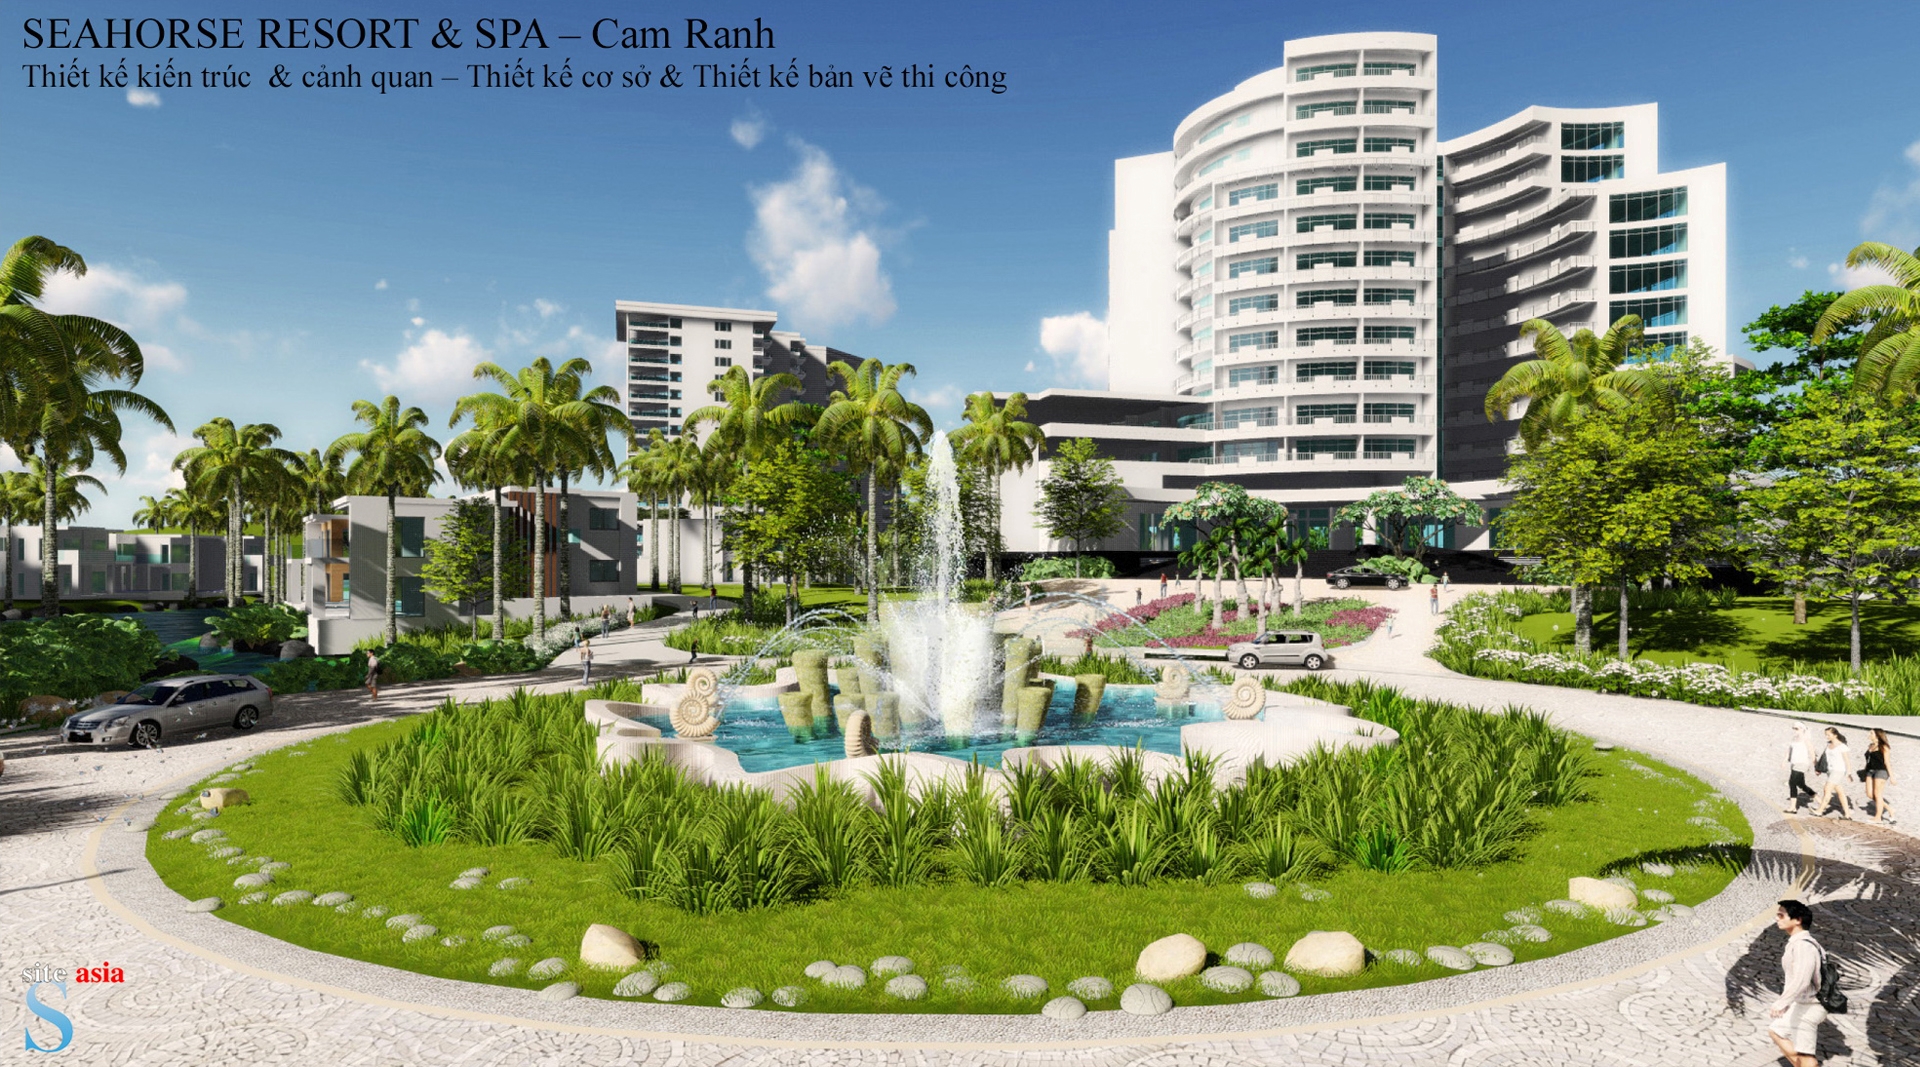 Seahorse Resort & Spa, Cam Ranh